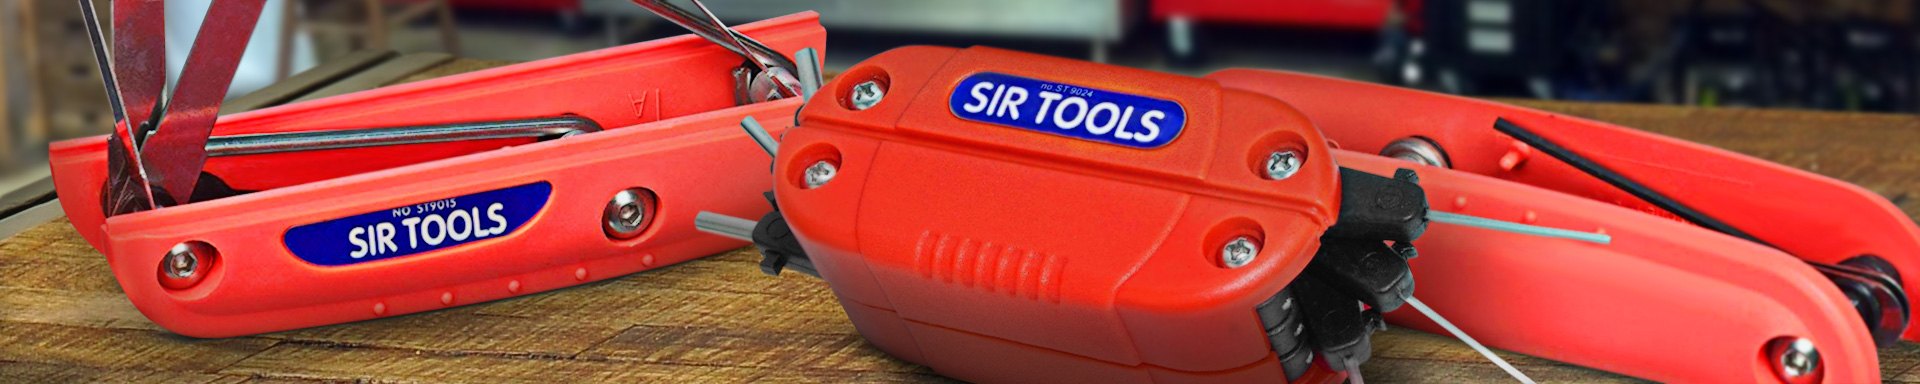 Sir Tools Spark Plug & Ignition Tools